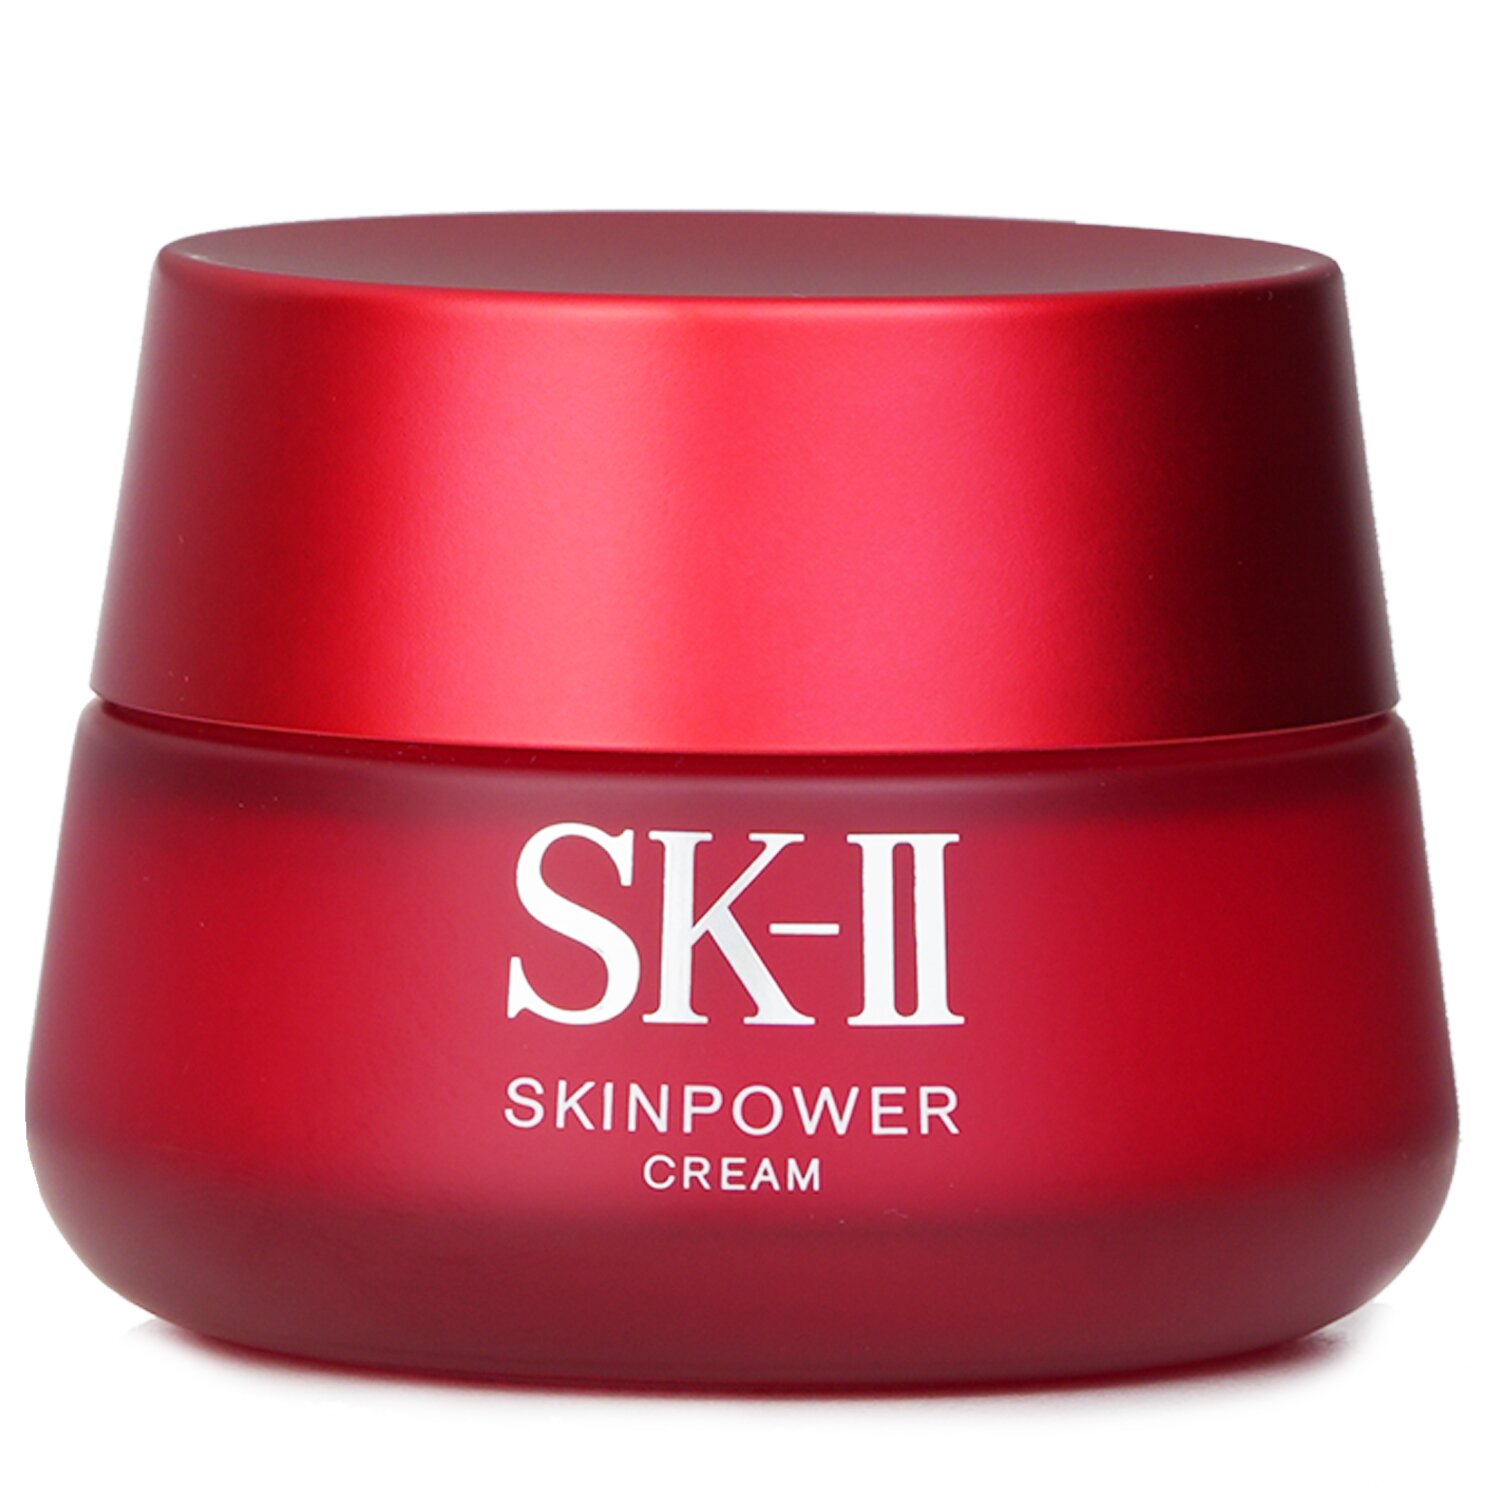 SK II SK-II Skinpower Cream (Travel exclusive) 80g/2.7oz